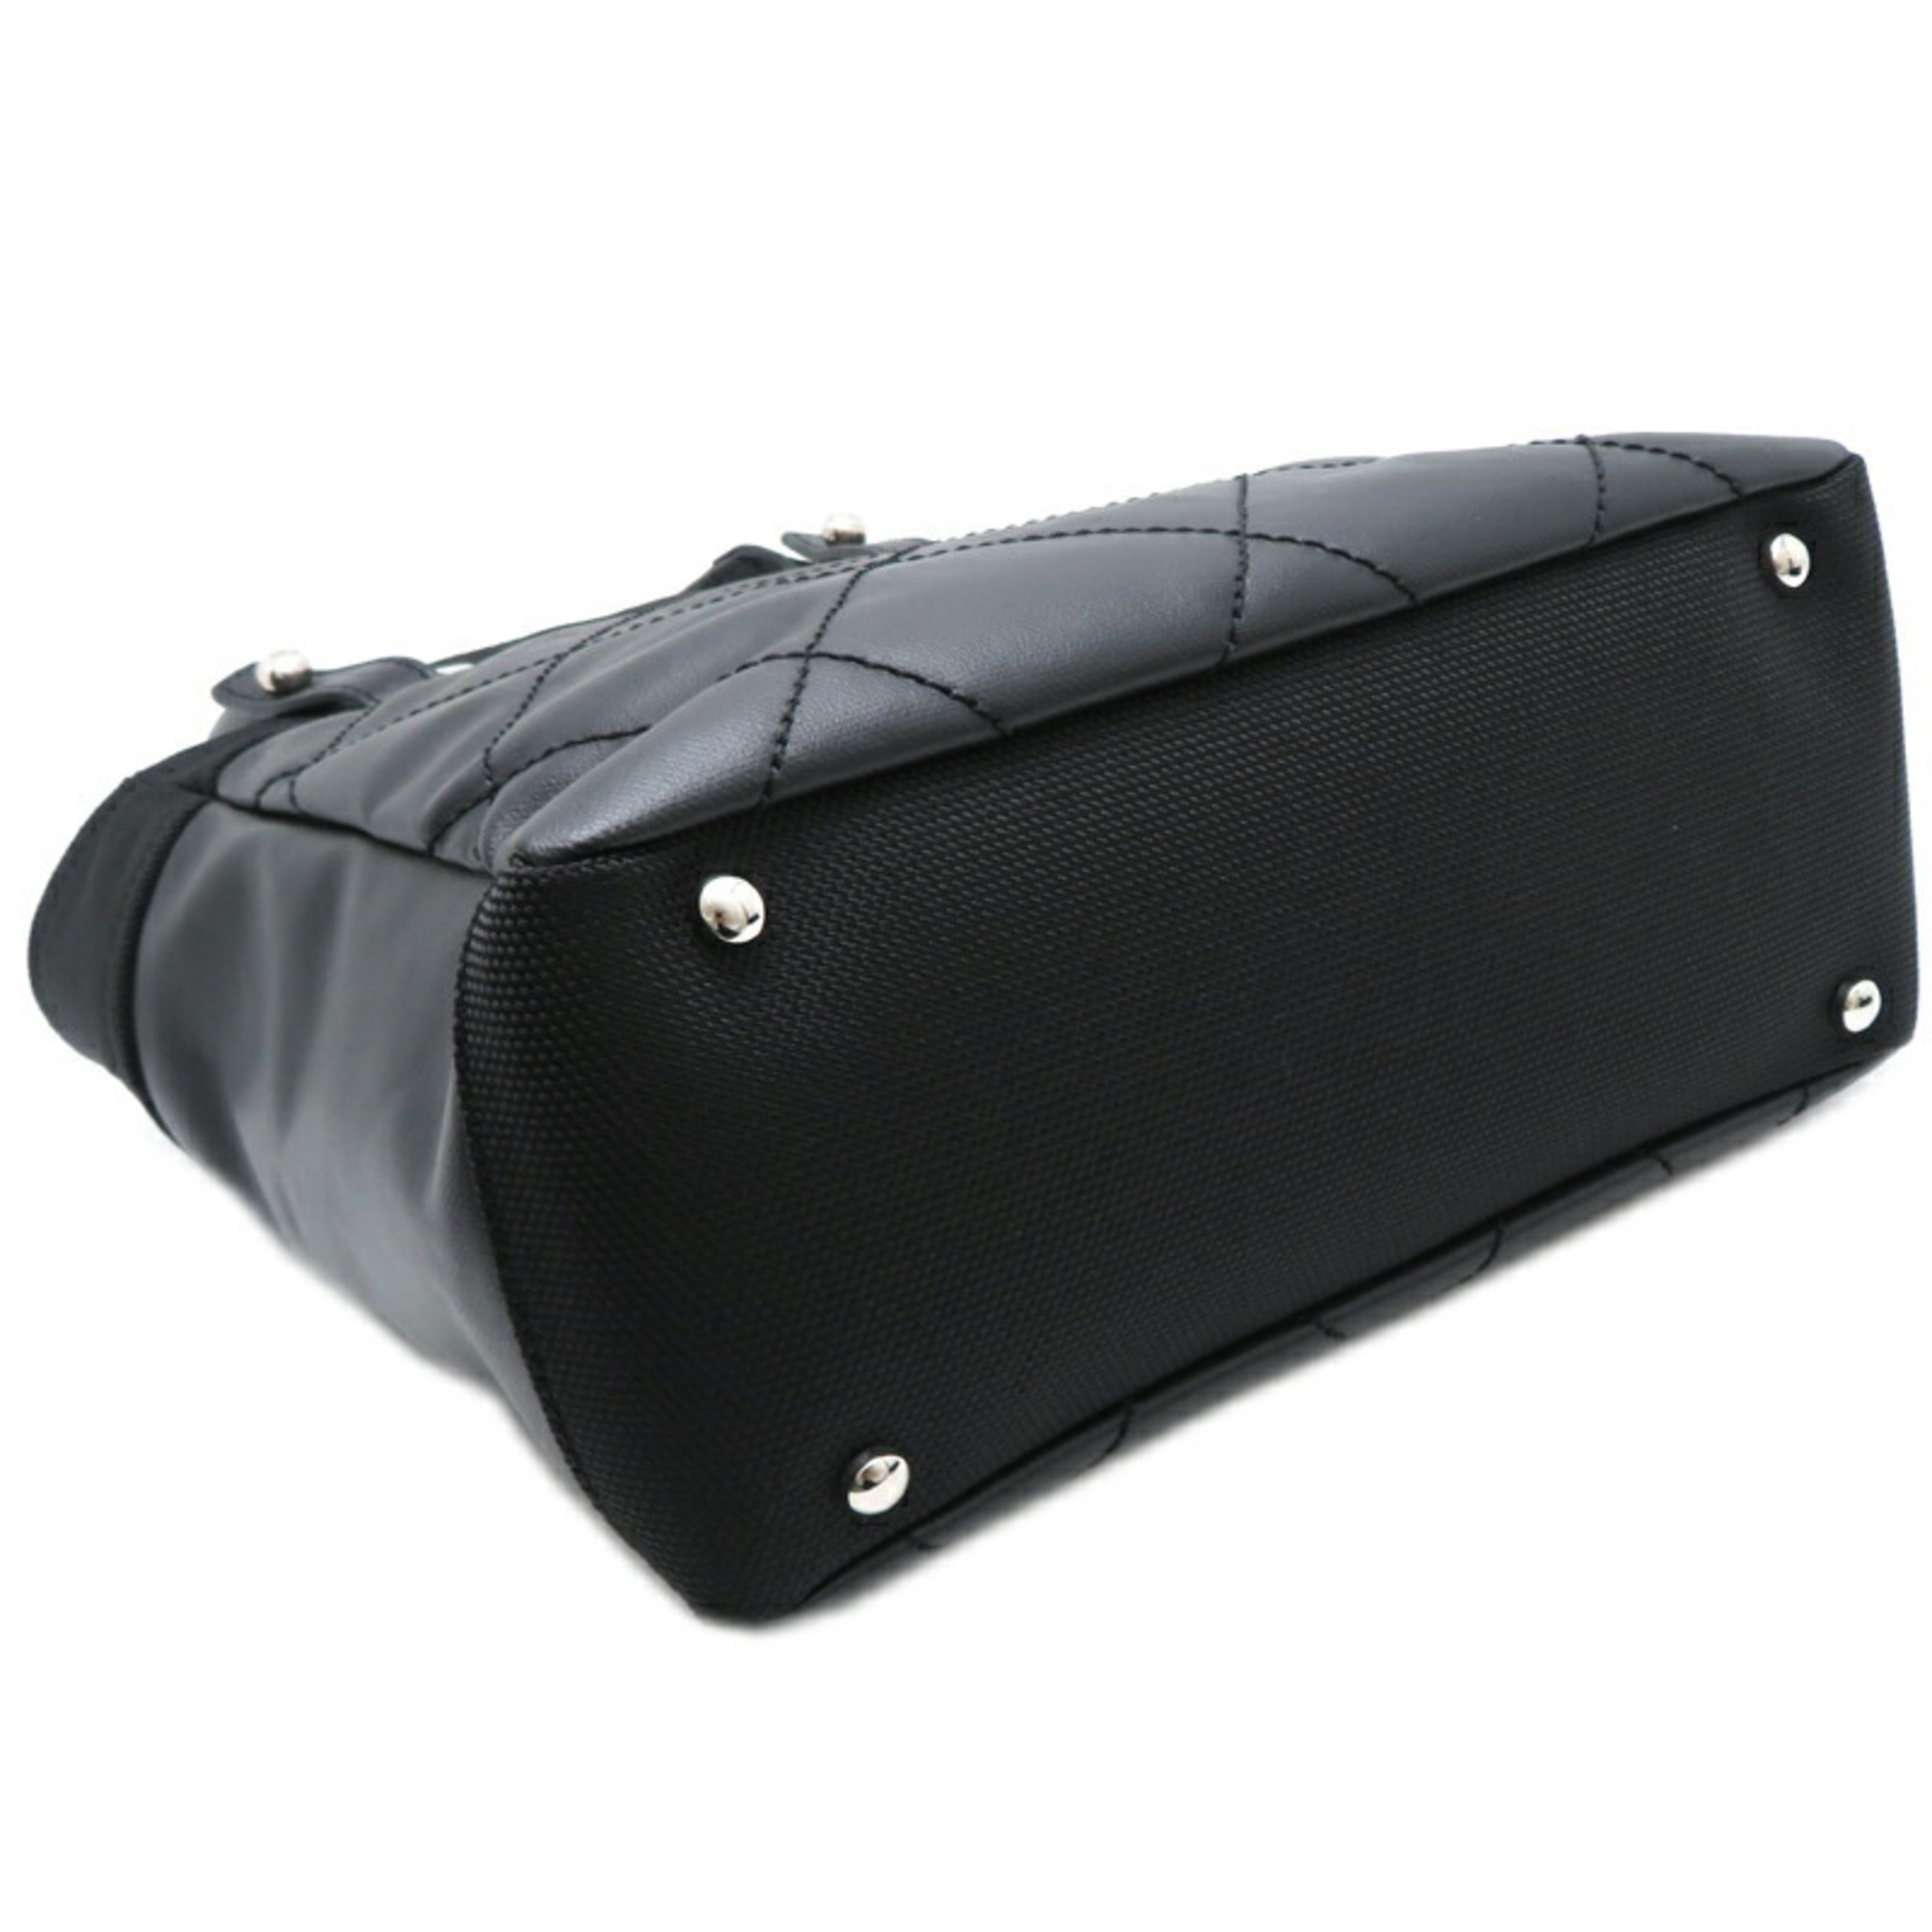 Chanel Paris Piaritz PM Women's Handbag A34208 Leather Black